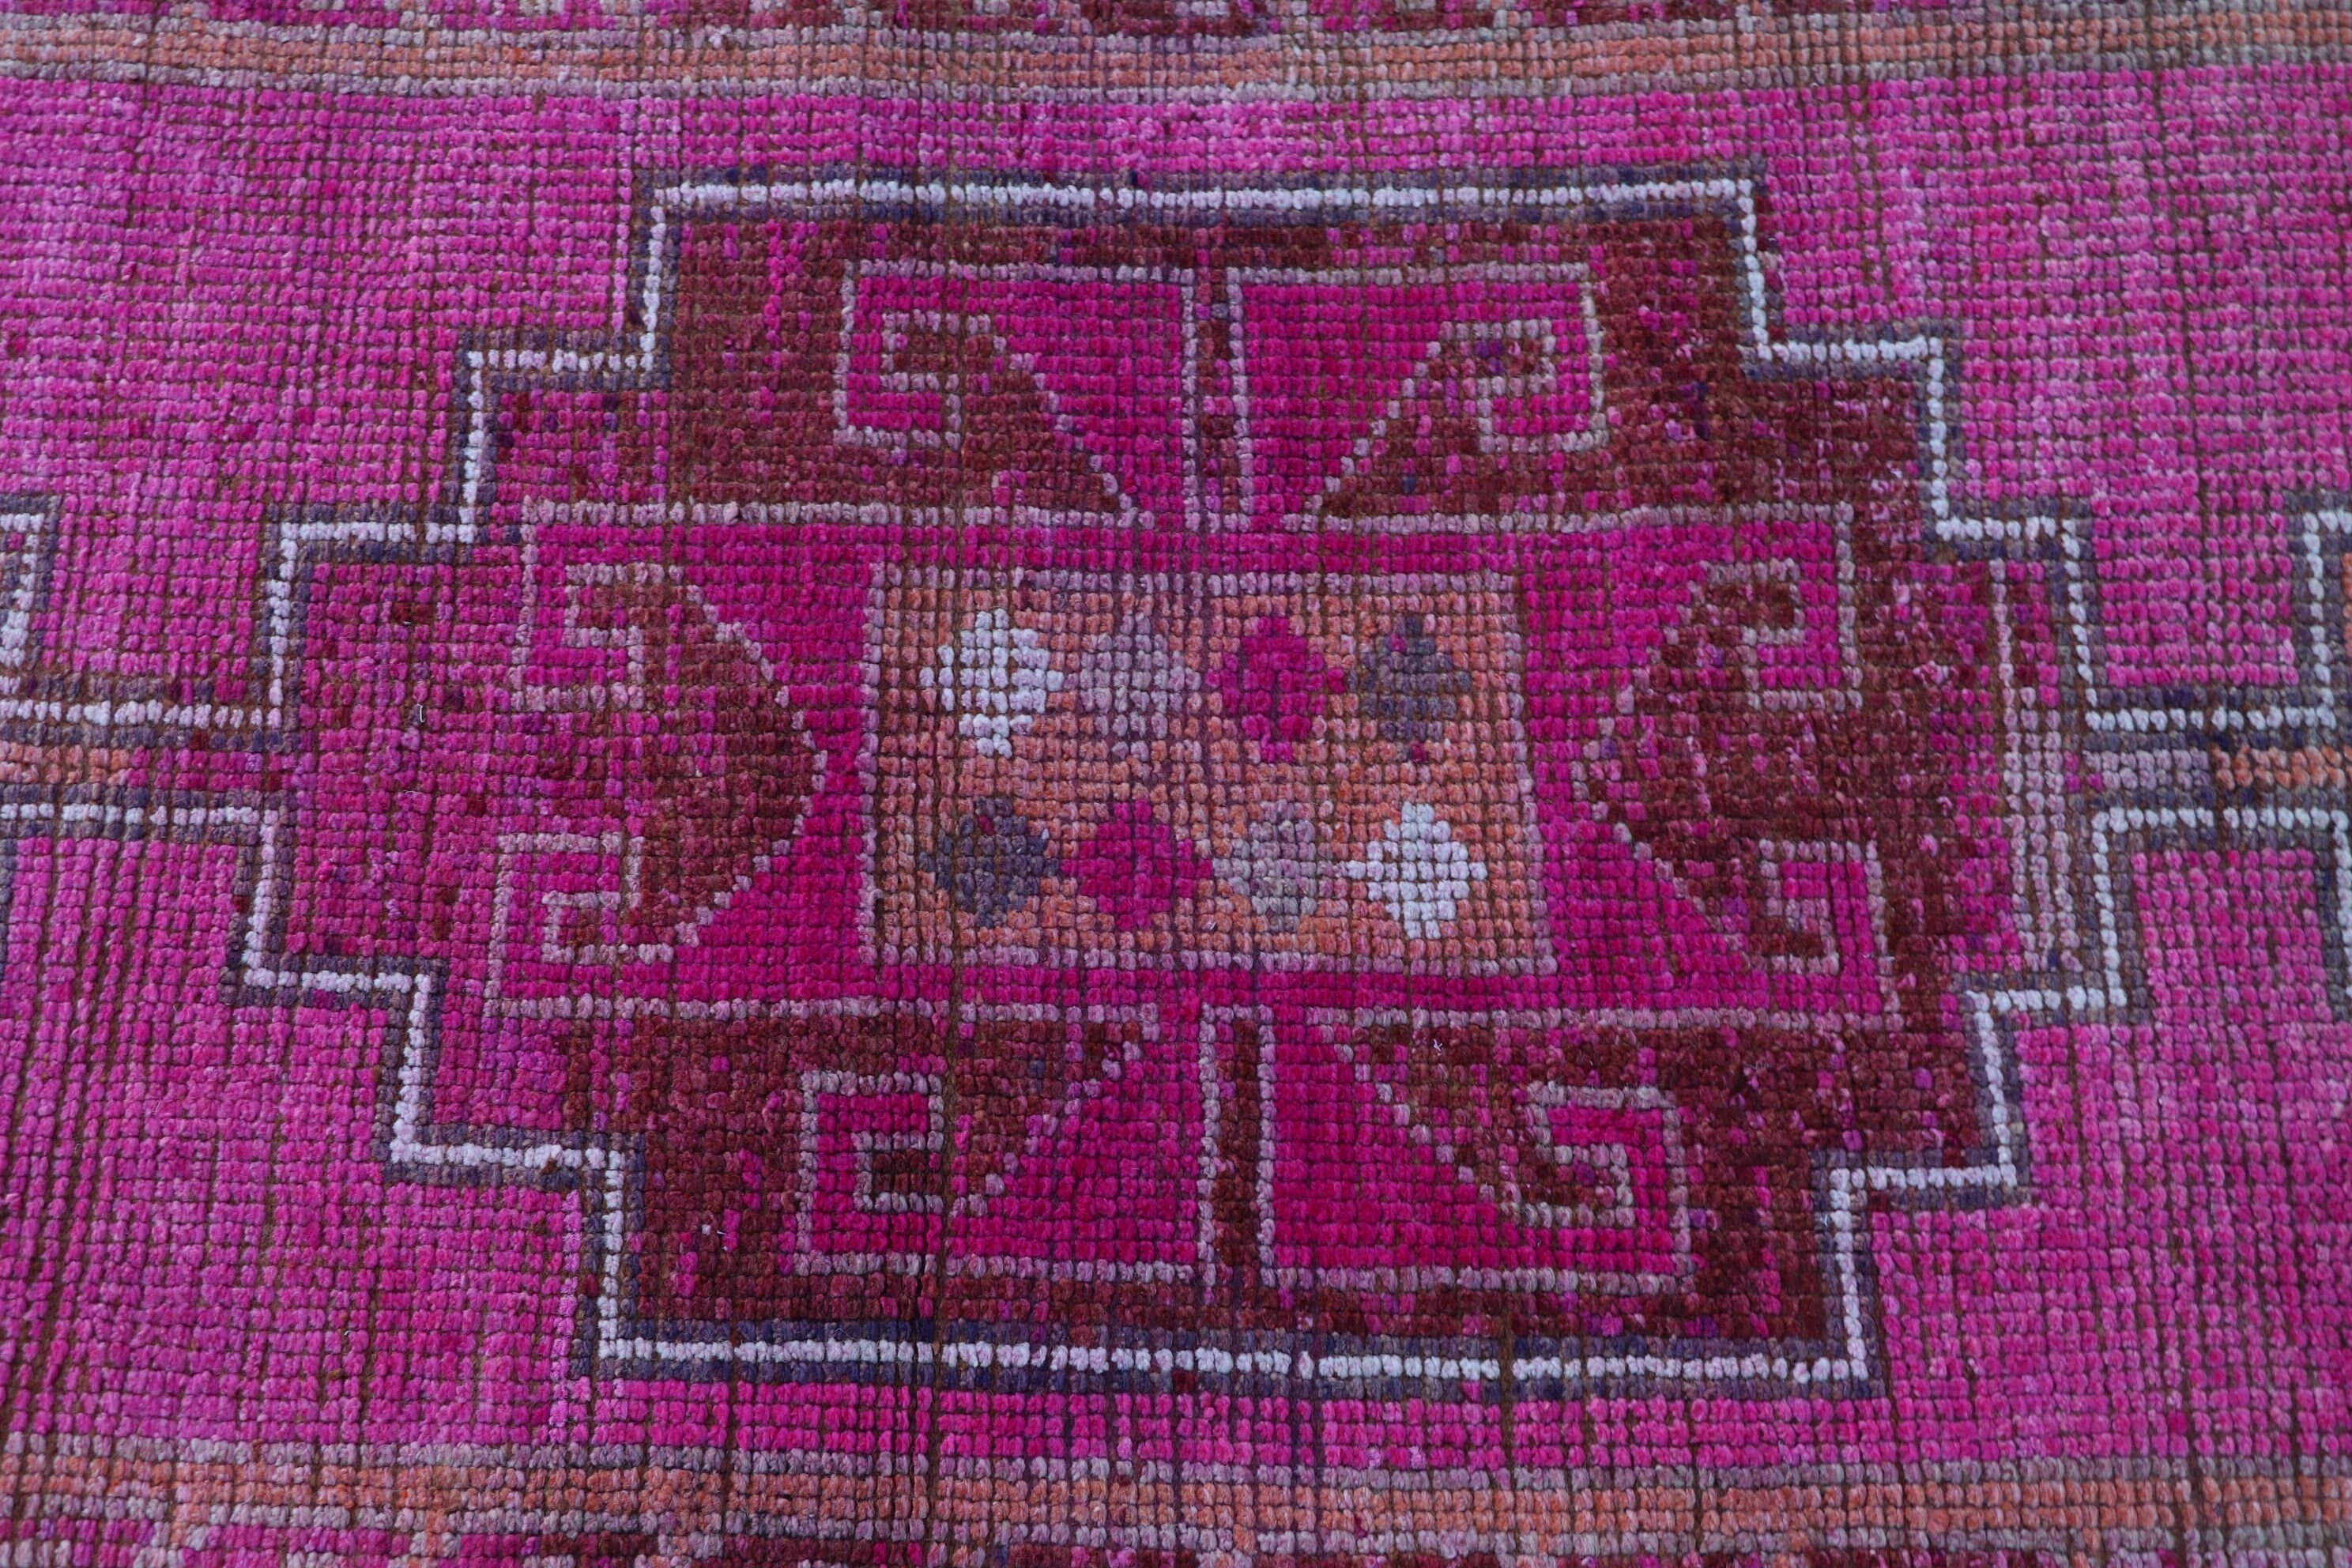 Vintage Rugs, Corridor Rug, Pale Rug, Oushak Rug, Hallway Rugs, Moroccan Rug, Turkish Rugs, Pink  3x10.6 ft Runner Rug